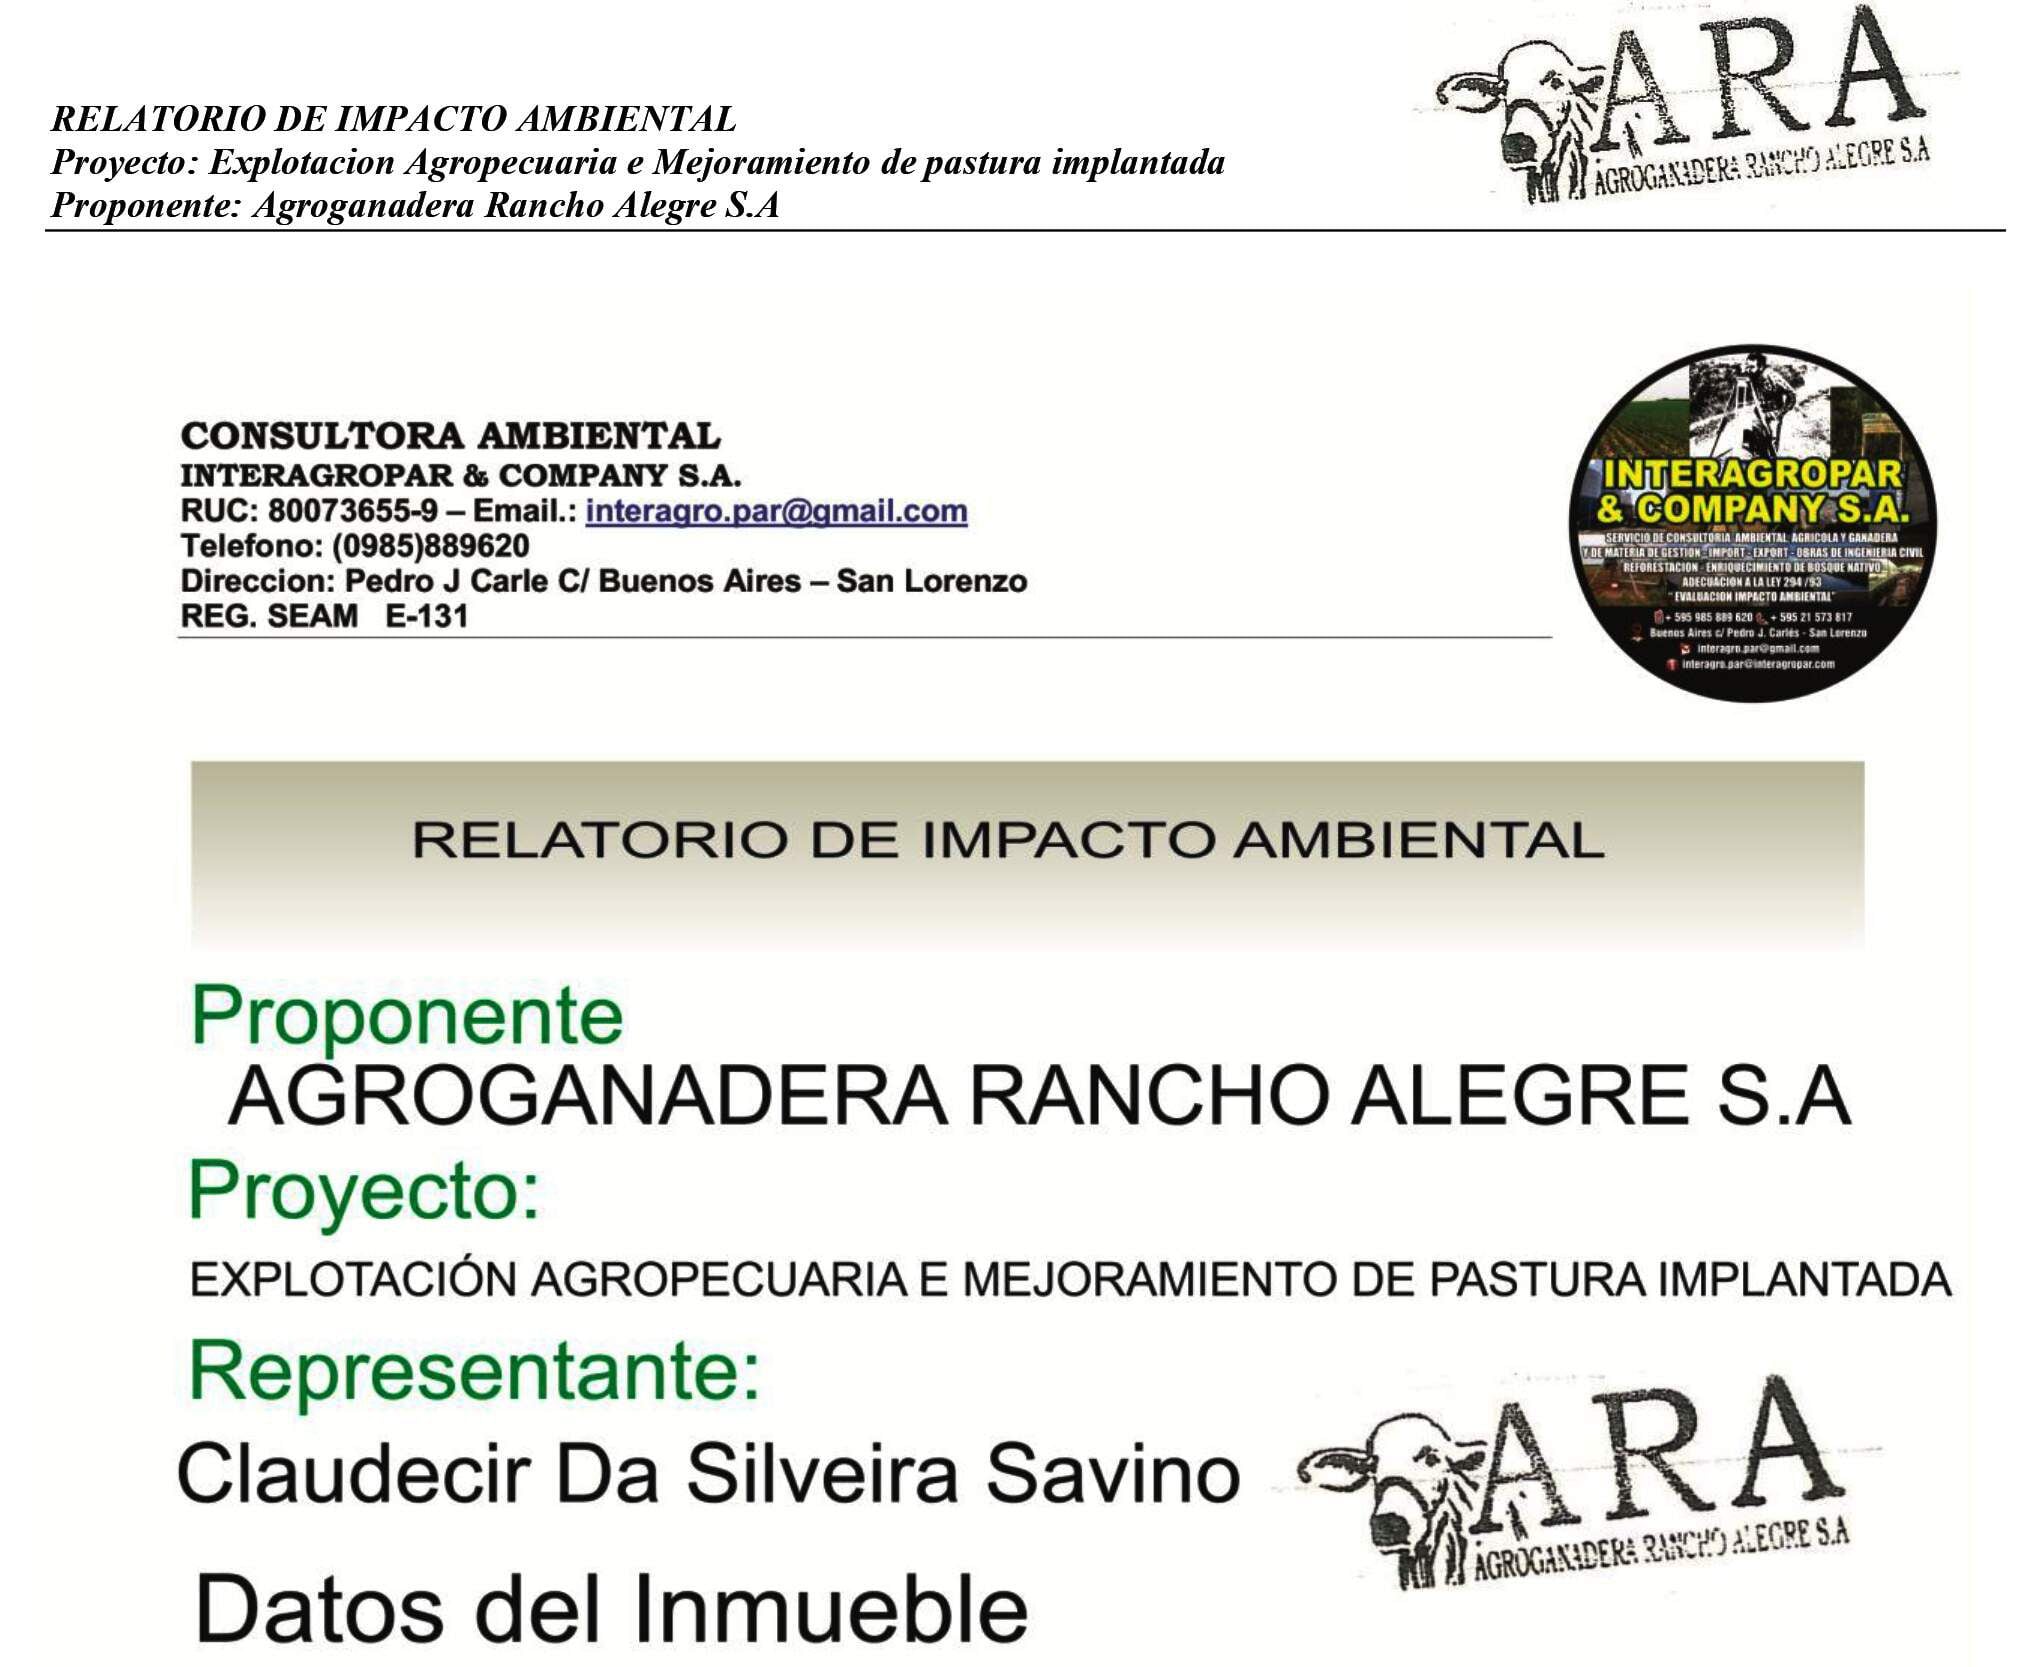 Carátula del relatorio ambiental presentado por la Agroganadera Rancho Alegre SA. En el documento reconocen la propiedad de la estancia allanada ayer y que el representante es Claudecir Da Silveira Savino.